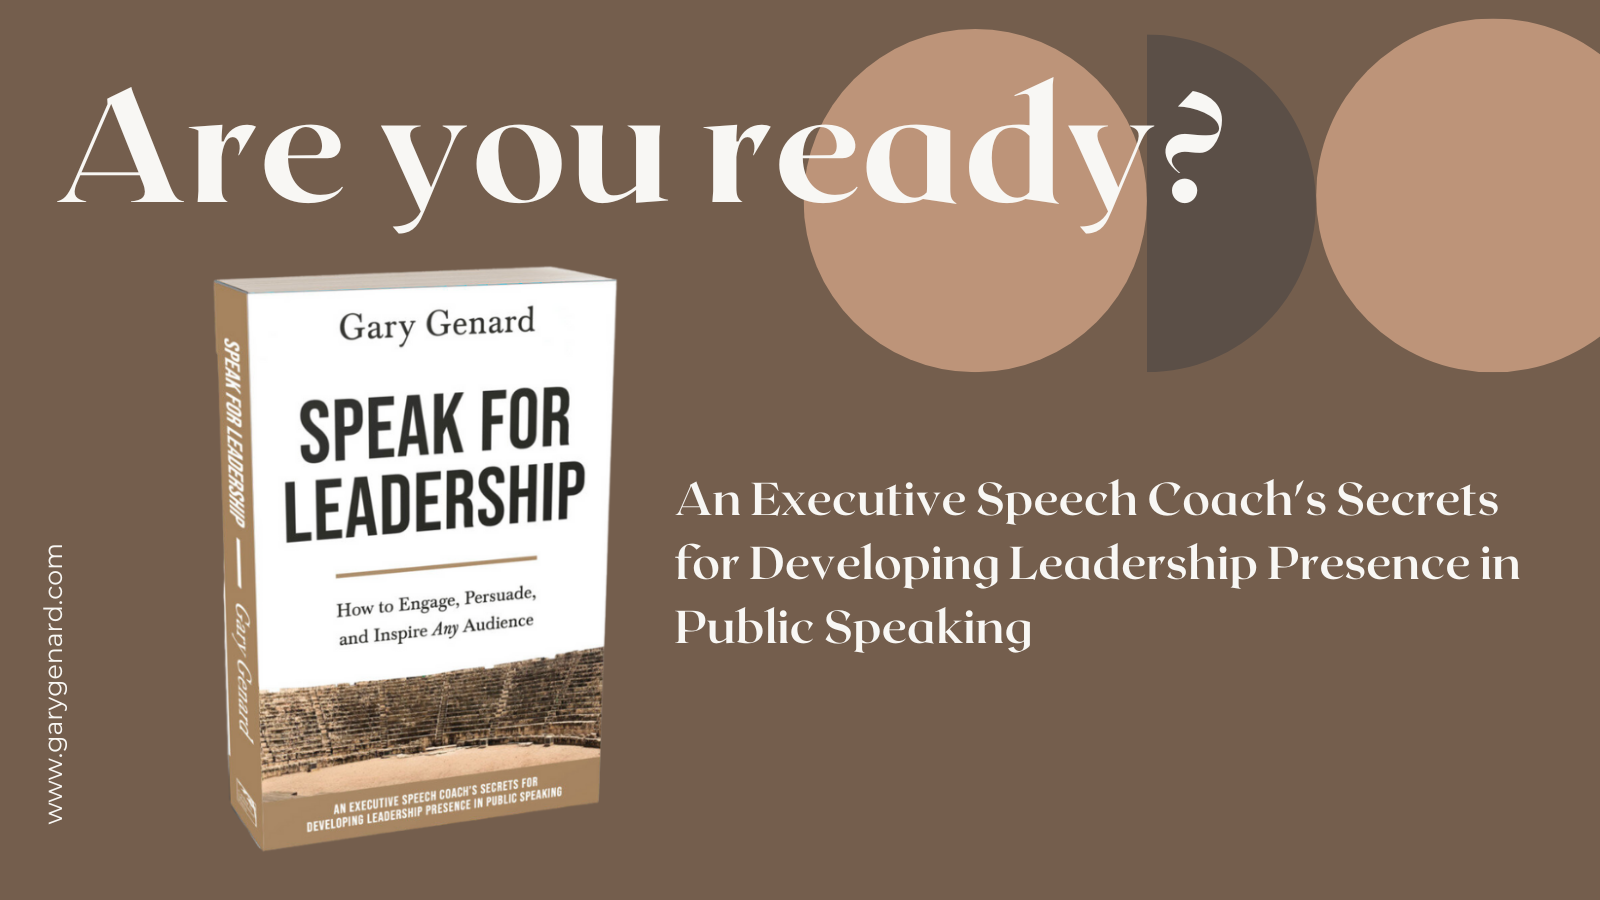 Vous voulez savoir comment parler en tant que leader ?  Obtenez le livre du Dr Gary Genard sur l'acquisition d'une présence exécutive, Speak for Leadership.